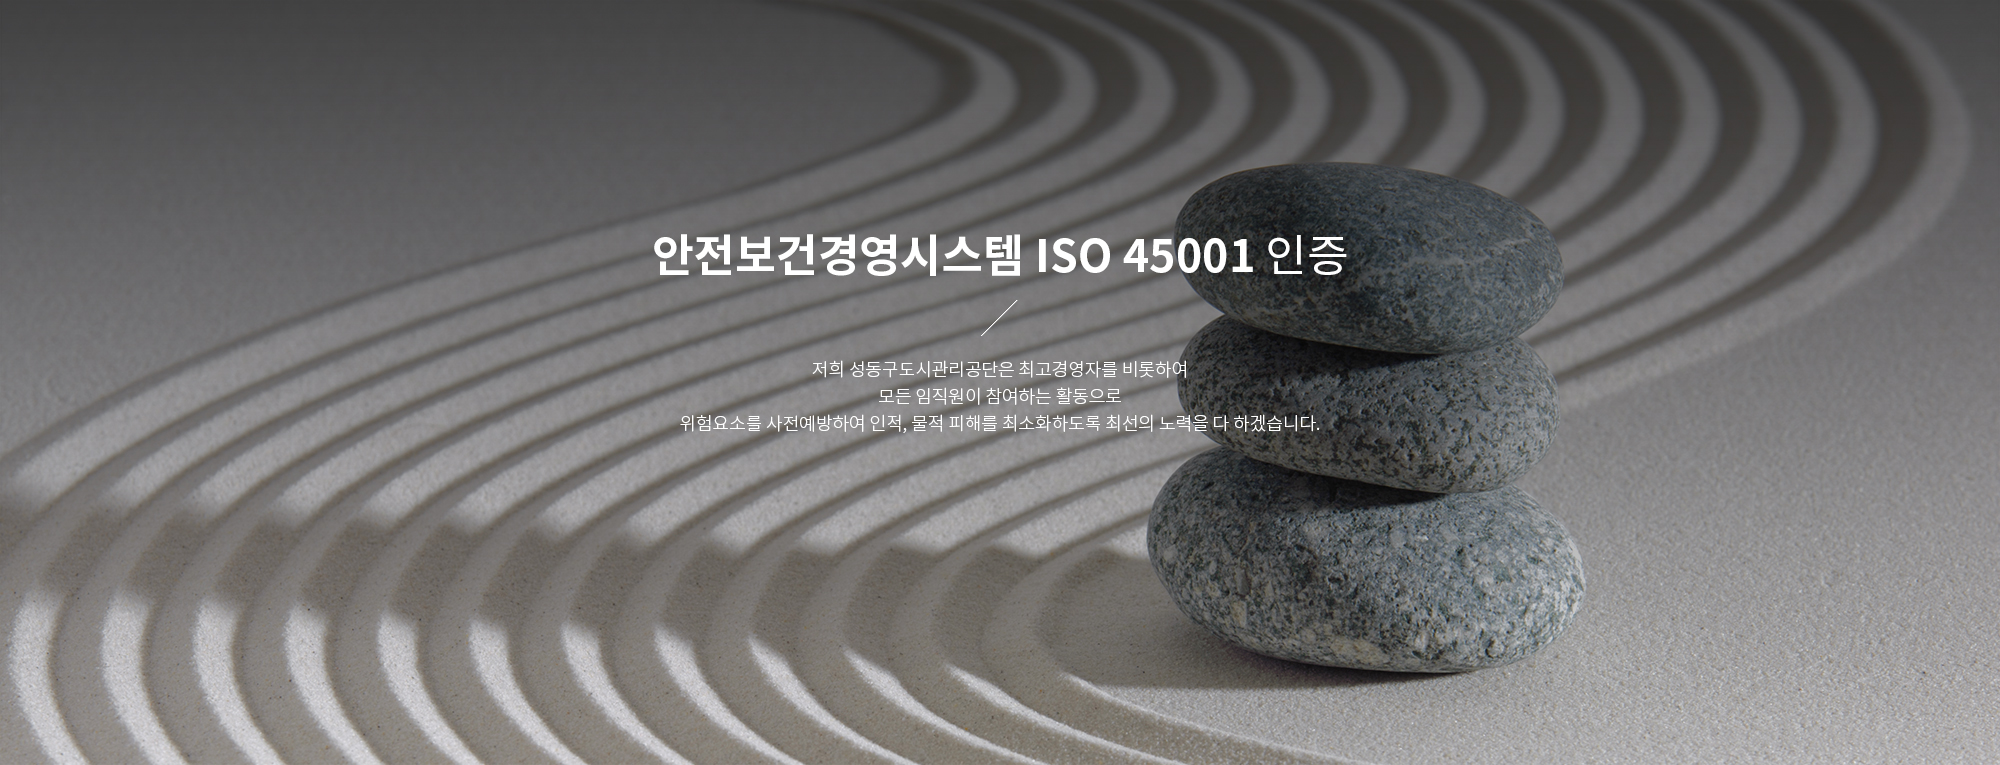 안전보건경영시스템 ISO 45001 인증